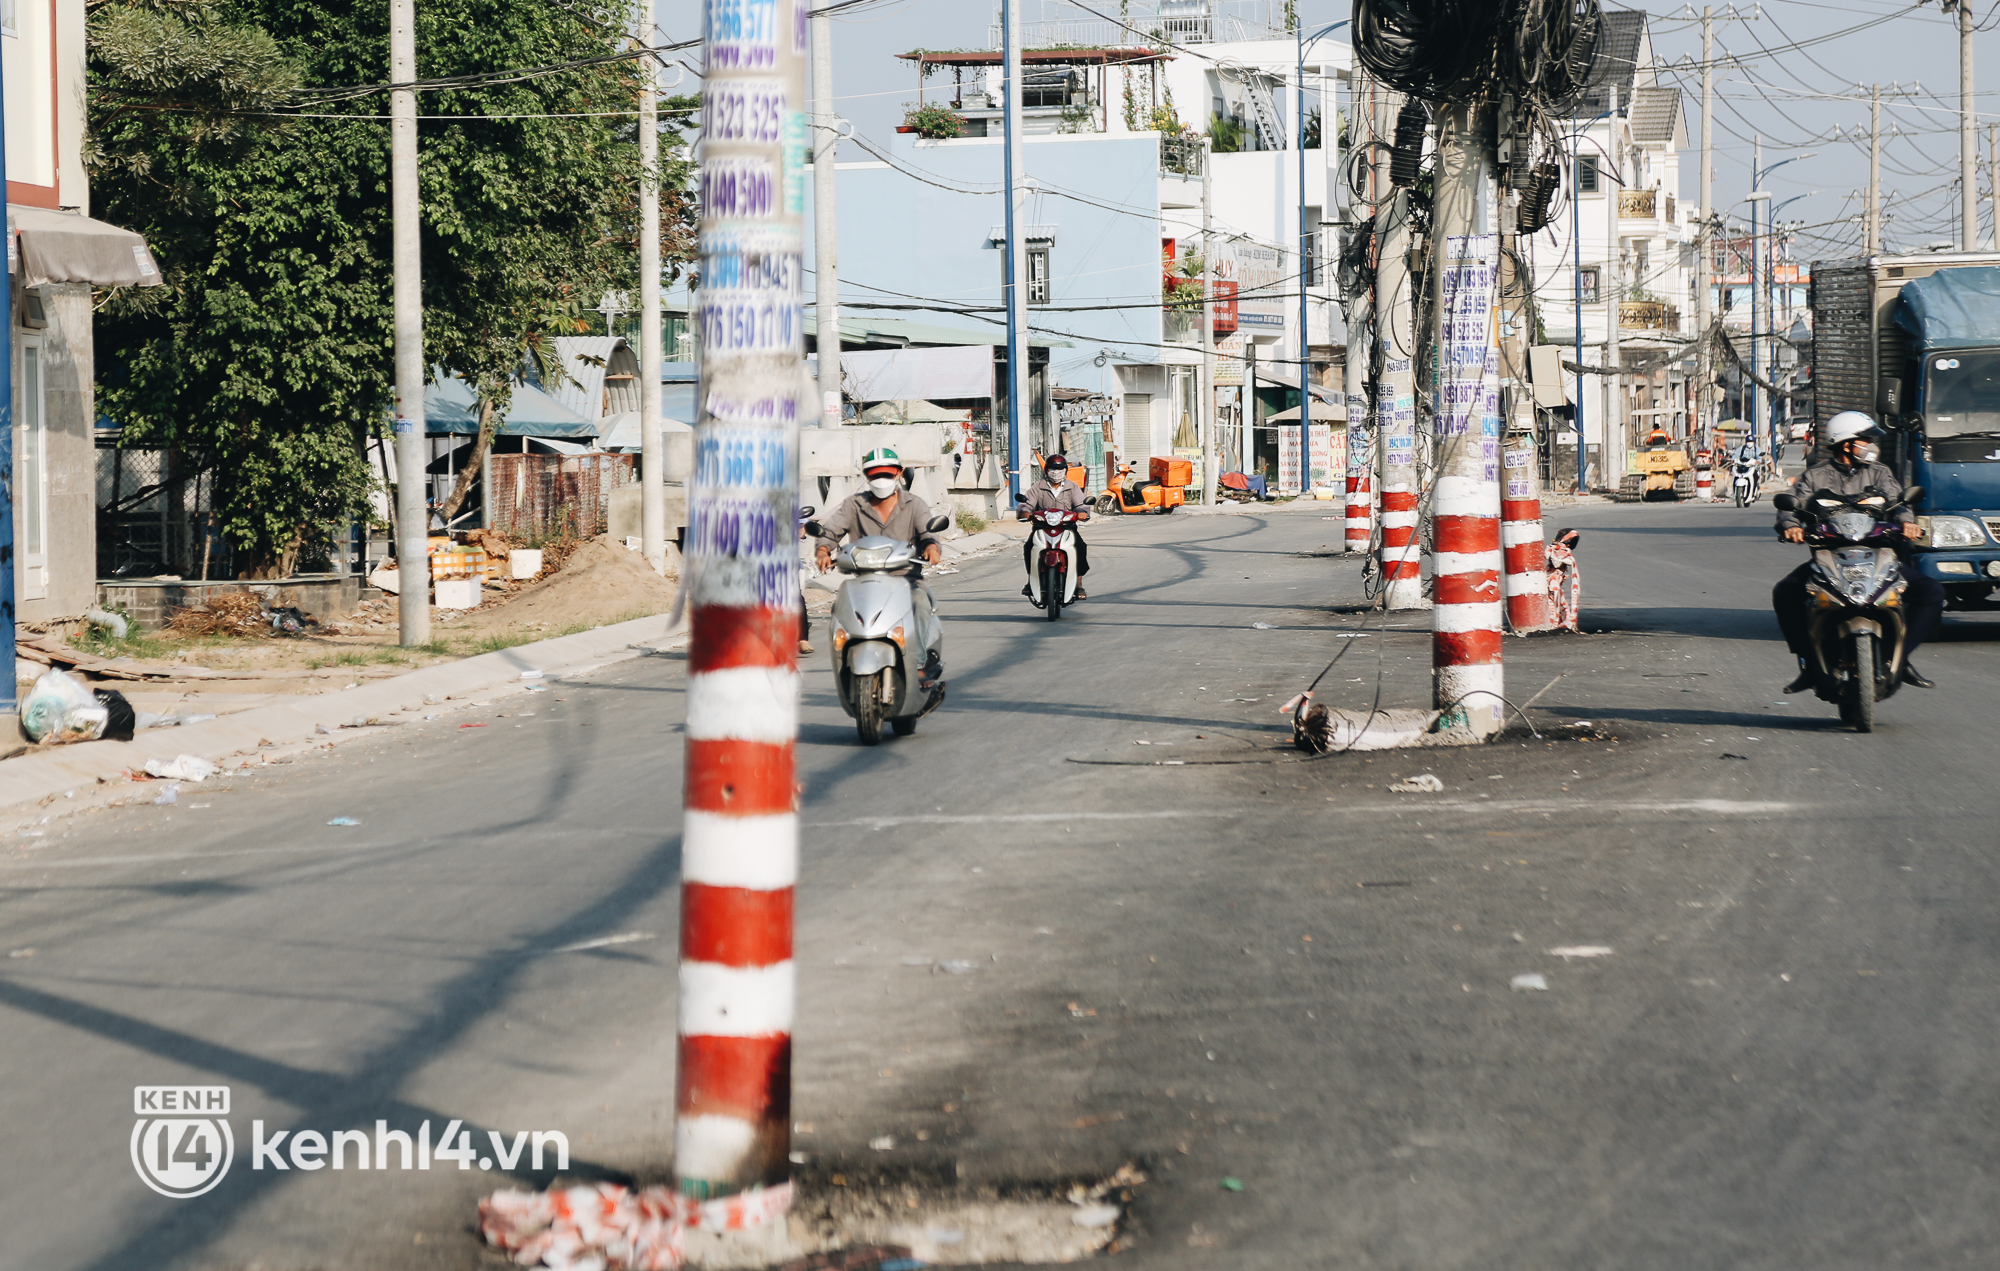 Hàng trăm cột điện bị bỏ quên giữa đường ở Sài Gòn, người dân nín thở luồn lách - Ảnh 8.